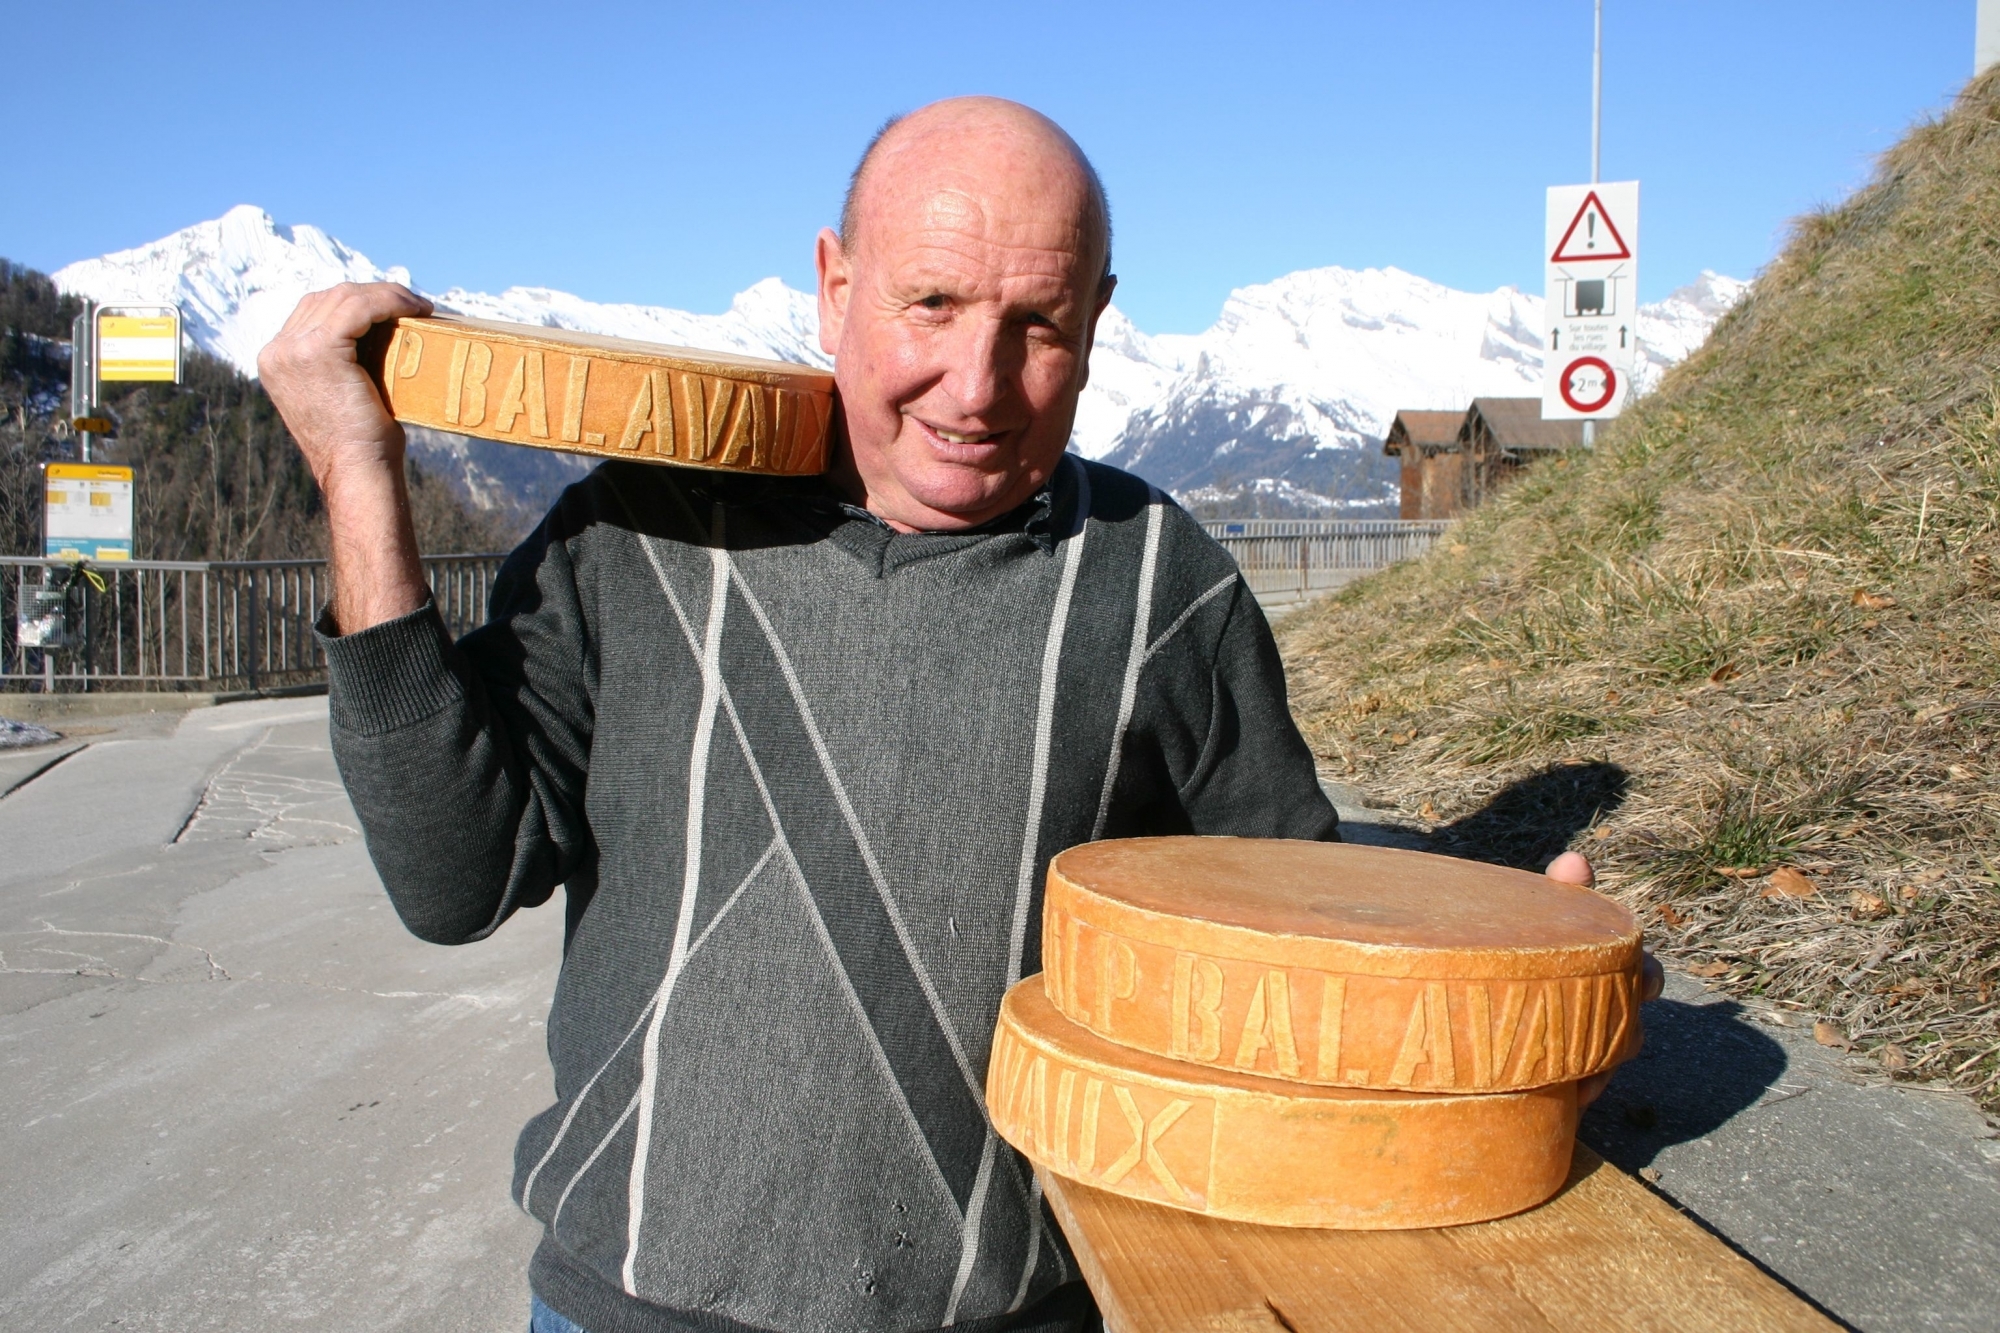 Paul Favre et son équipe ont produit 1100 meules de Raclette du Valais AOP estampillées Alpage de Balavaux en 2019. 